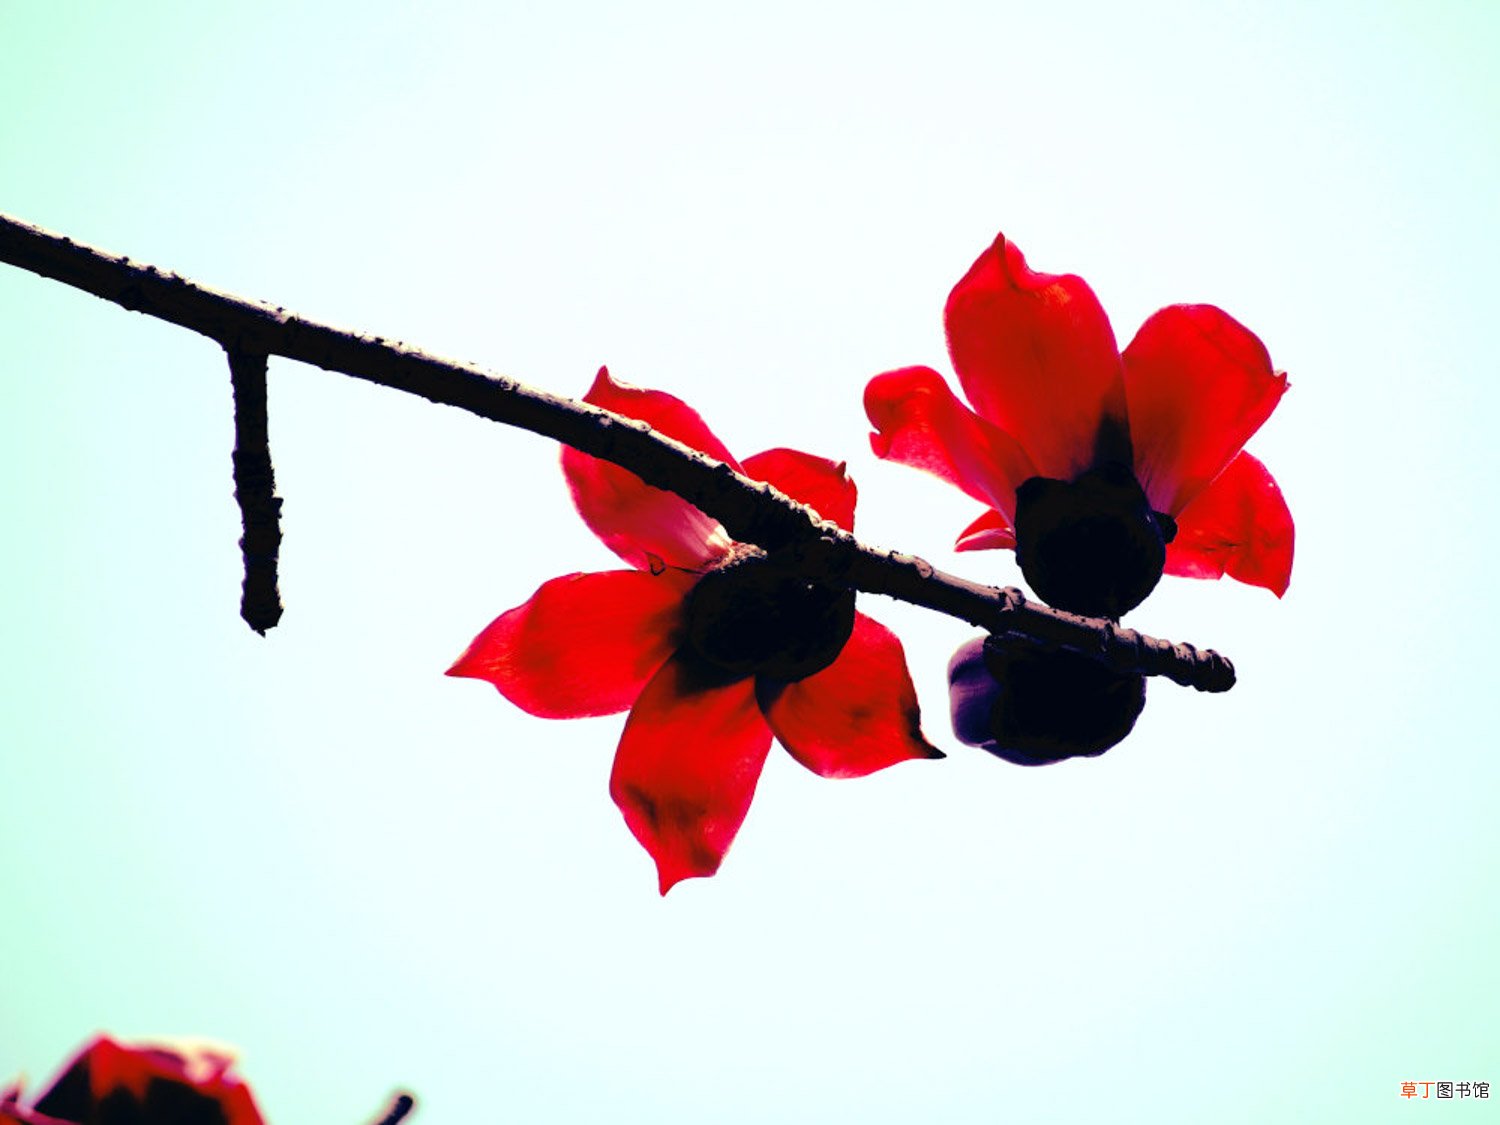 【木棉花】攀枝花和木棉花是同一种花吗